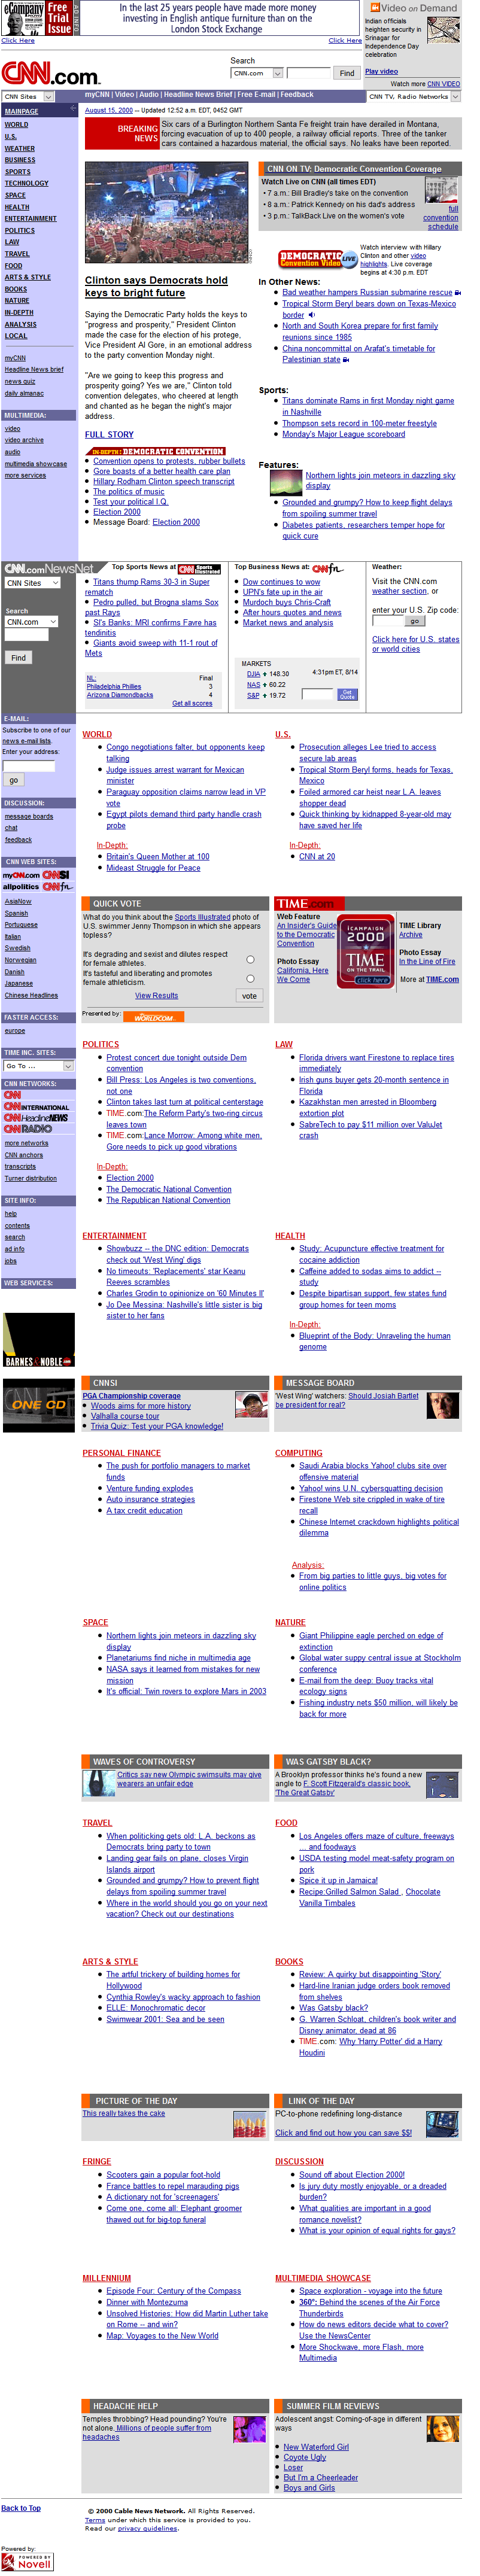 CNN.com website in 2000